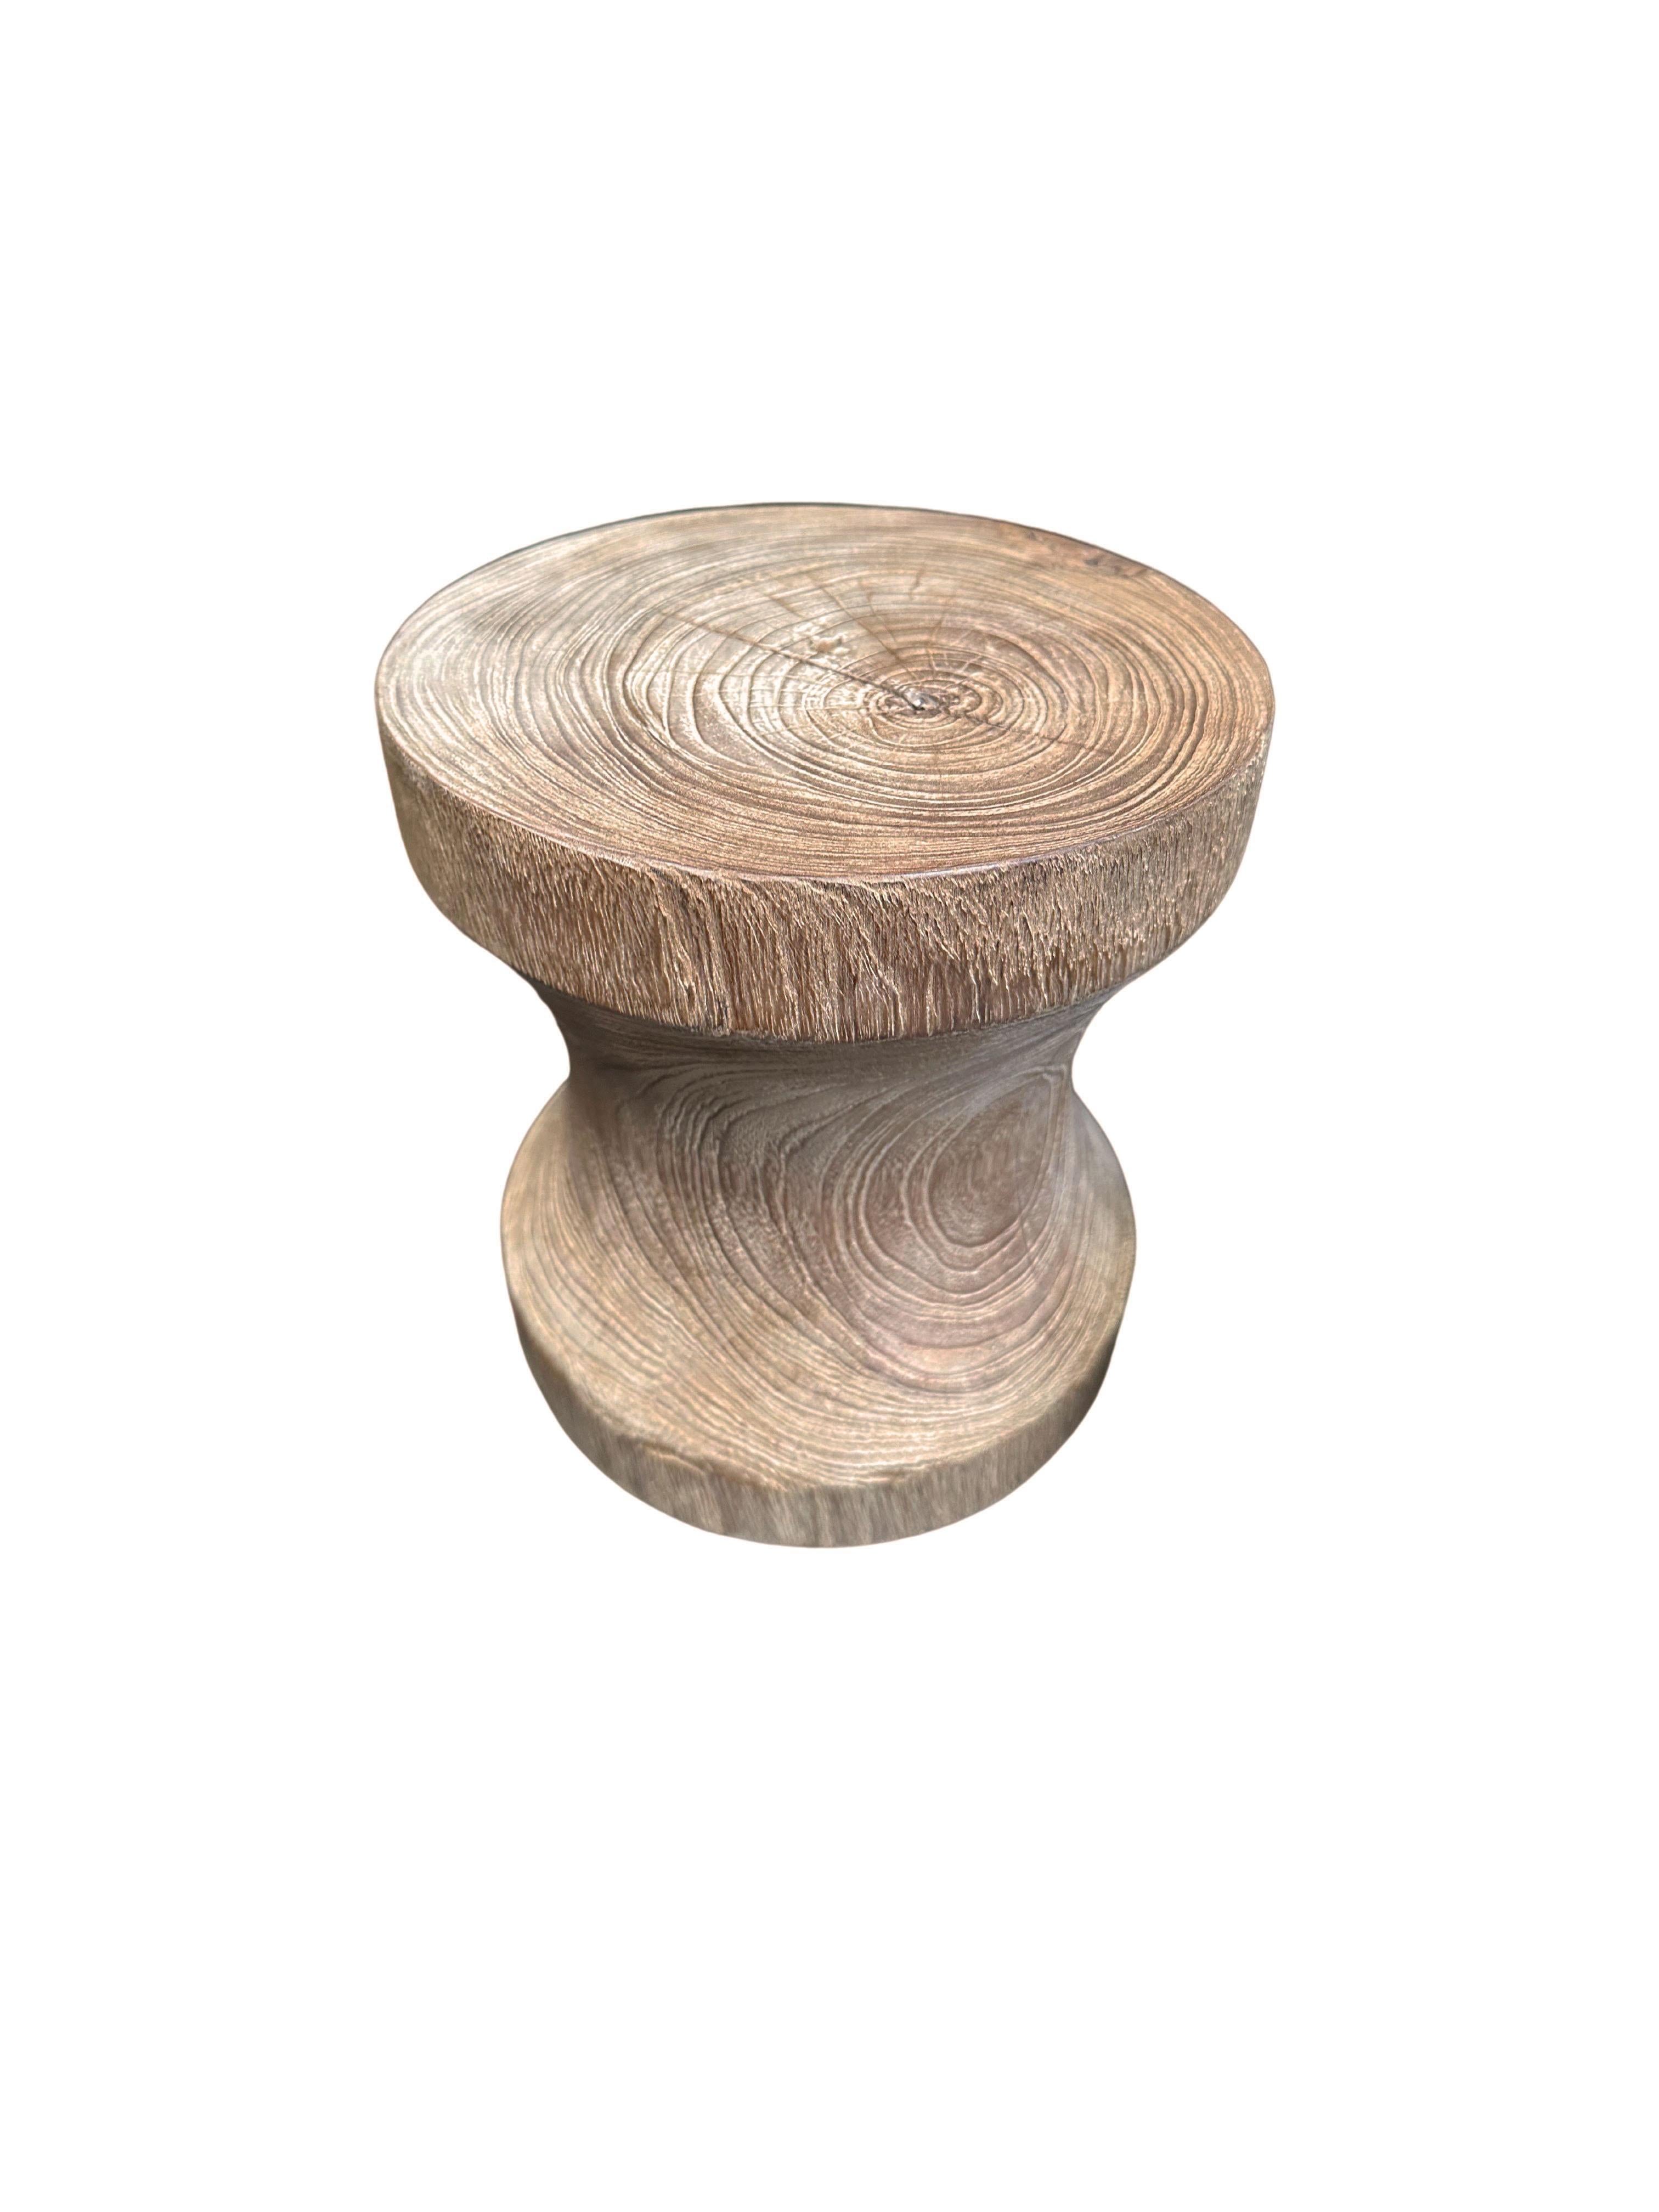 Une table d'appoint ronde merveilleusement sculpturale en finition naturelle. Son pigment neutre et sa texture boisée s'intègrent parfaitement à tous les espaces. Sculpté dans un tronc de teck massif, il donne vie aux textures du bois. 

 